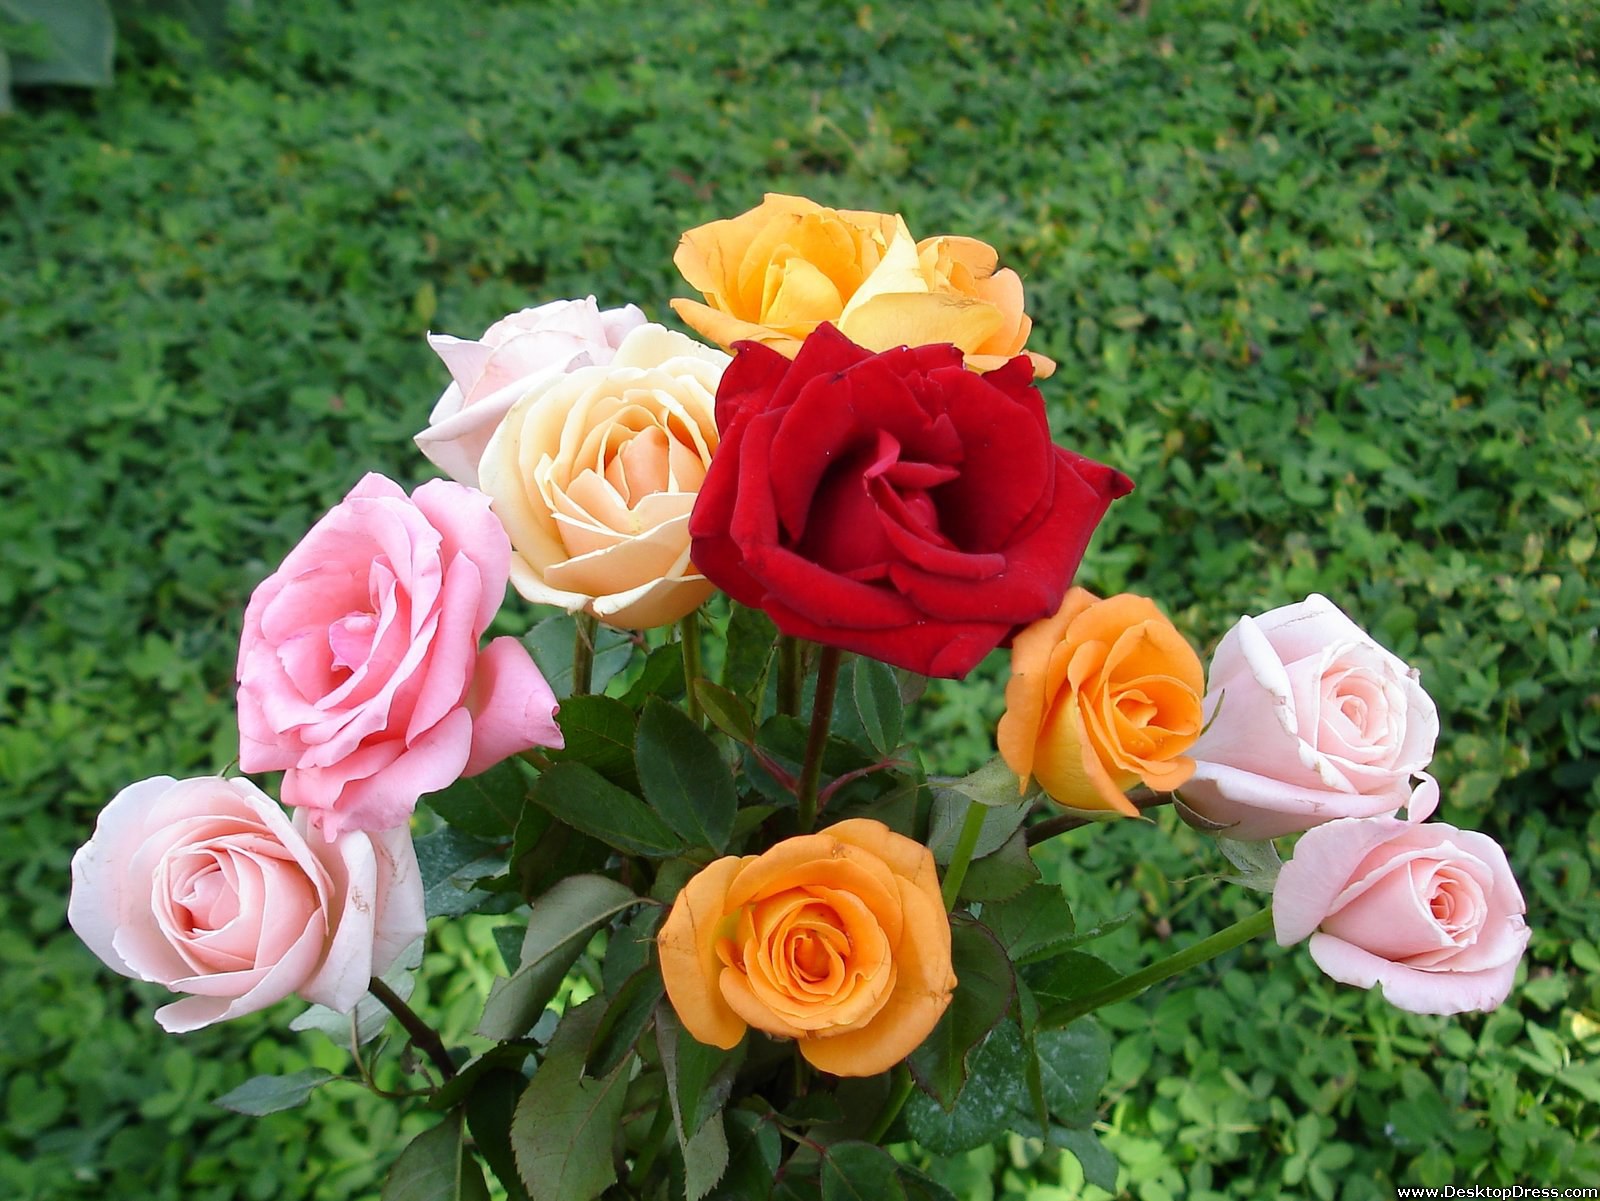 Desktop Wallpapers » Flowers Backgrounds » Fresh Rose Bouquet » www ...